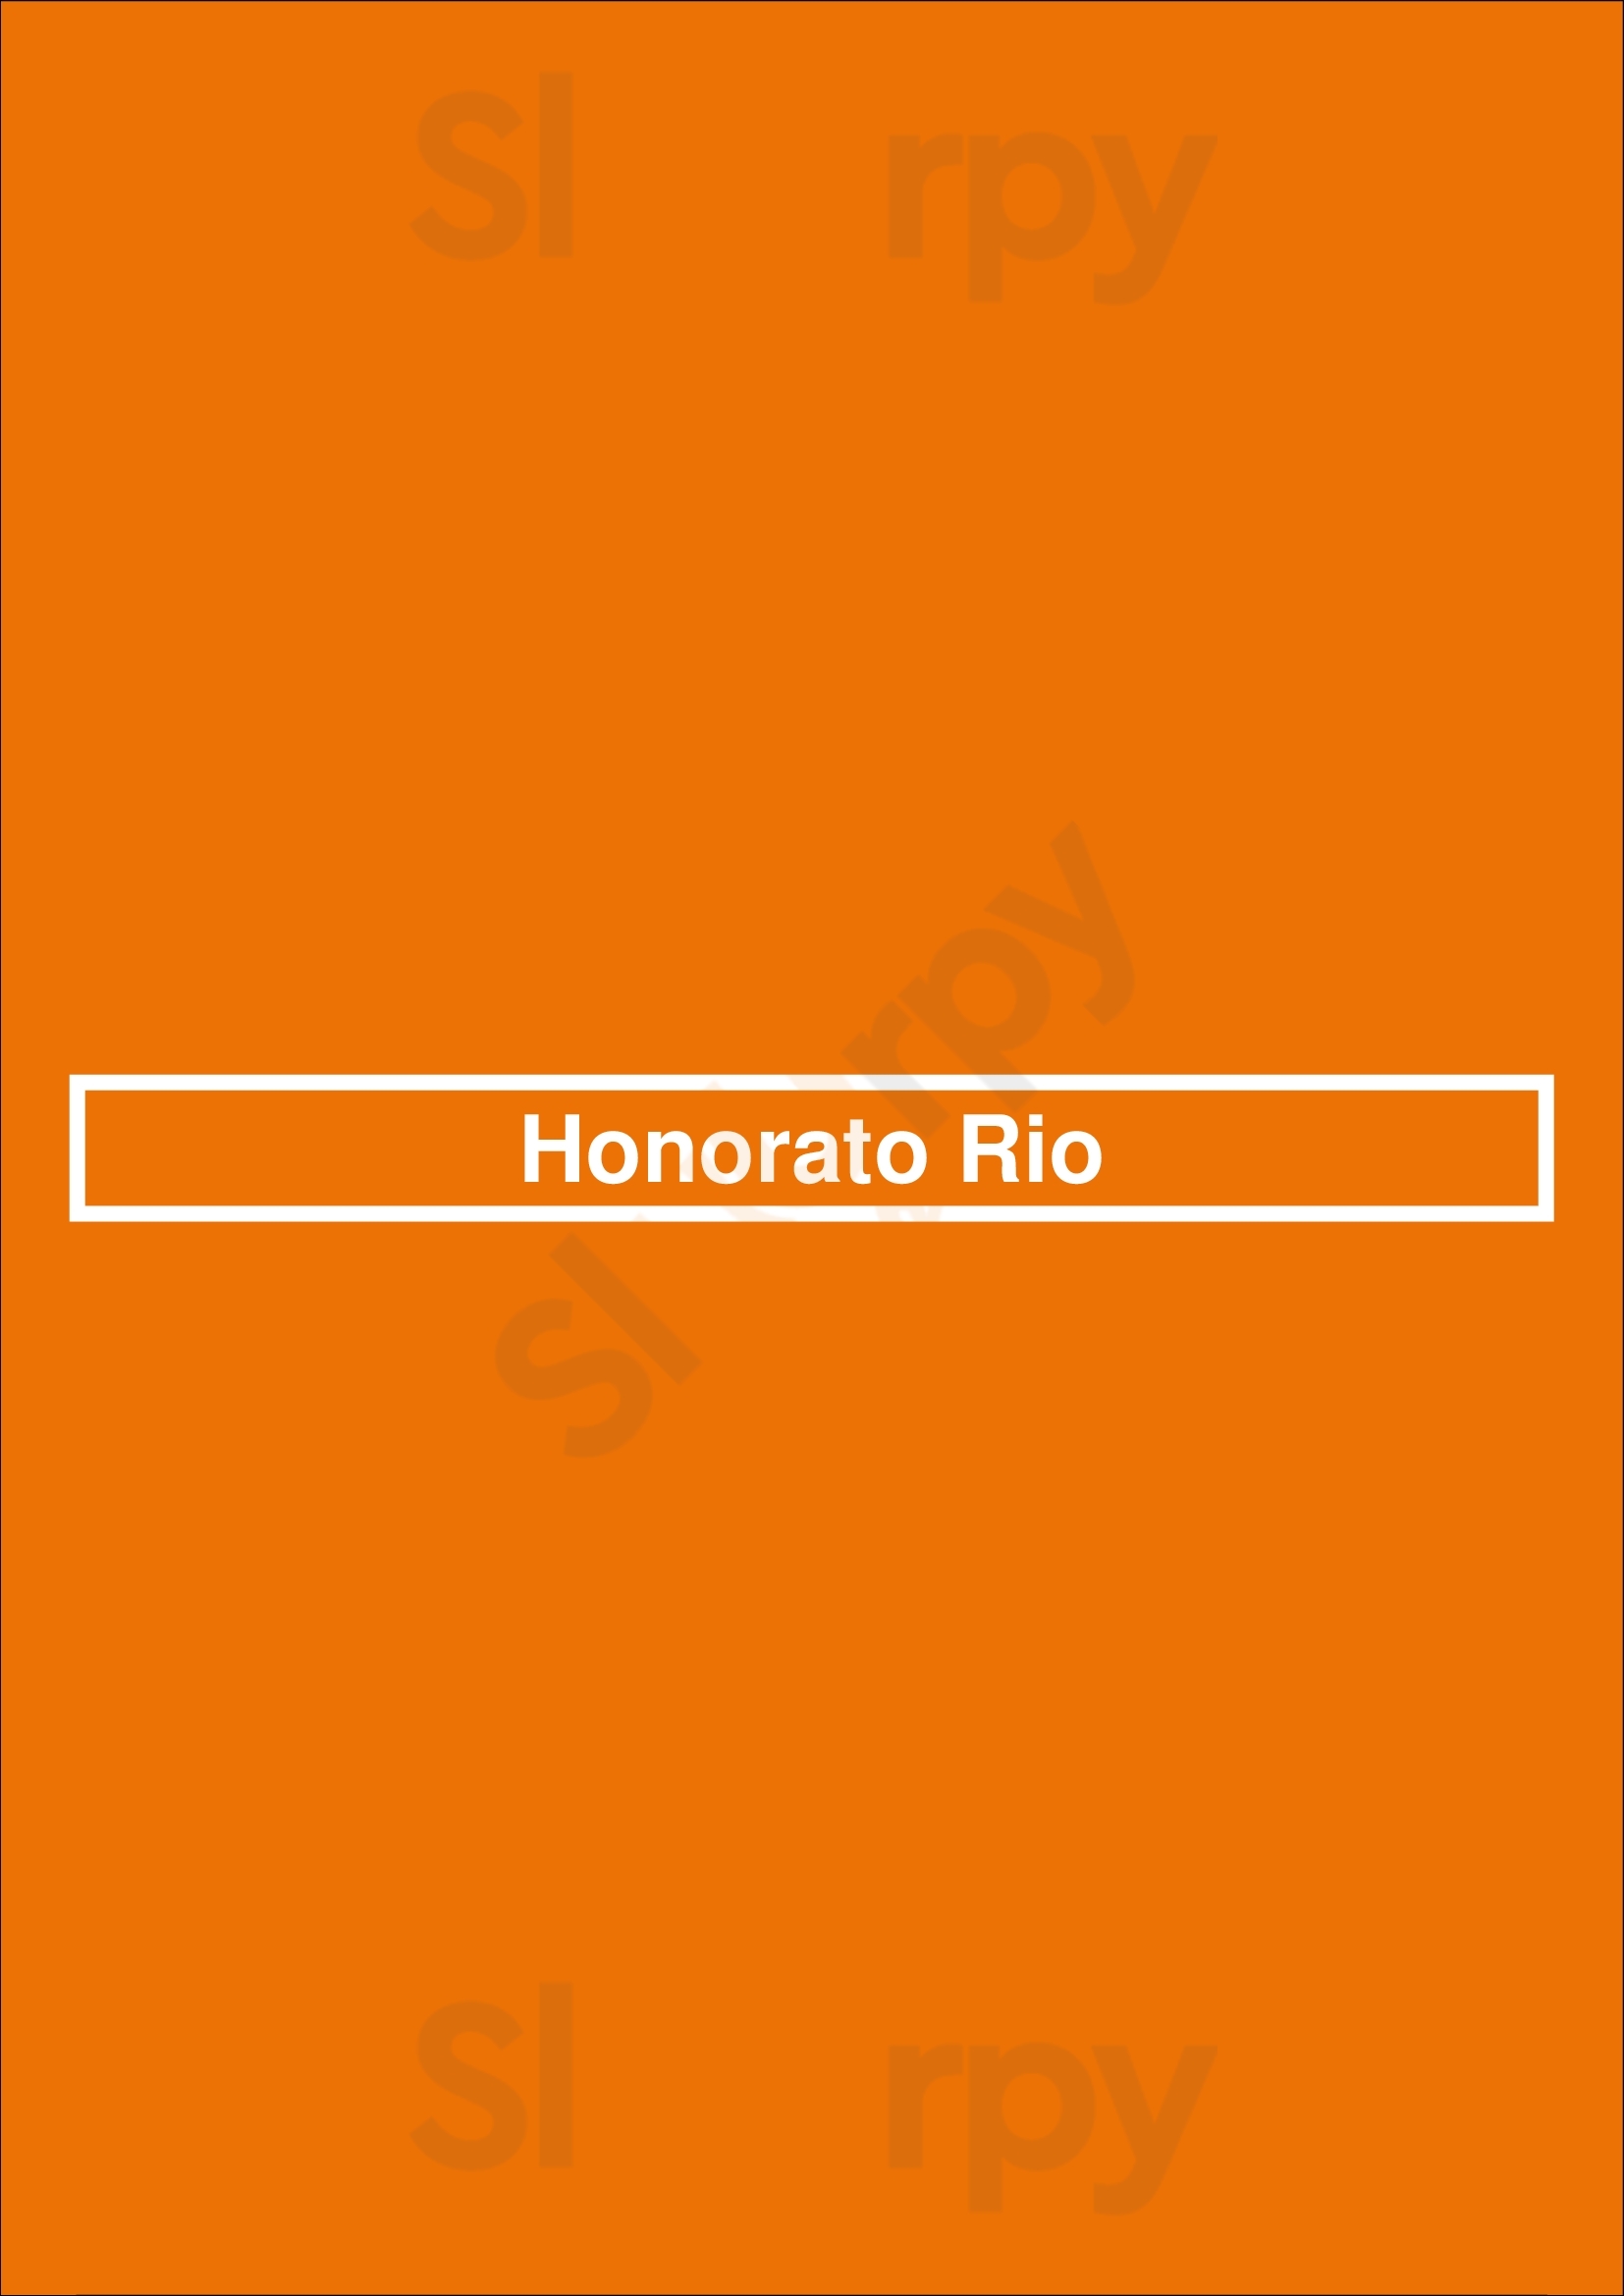 Honorato Hamburgueres Artesanais Lisboa Menu - 1